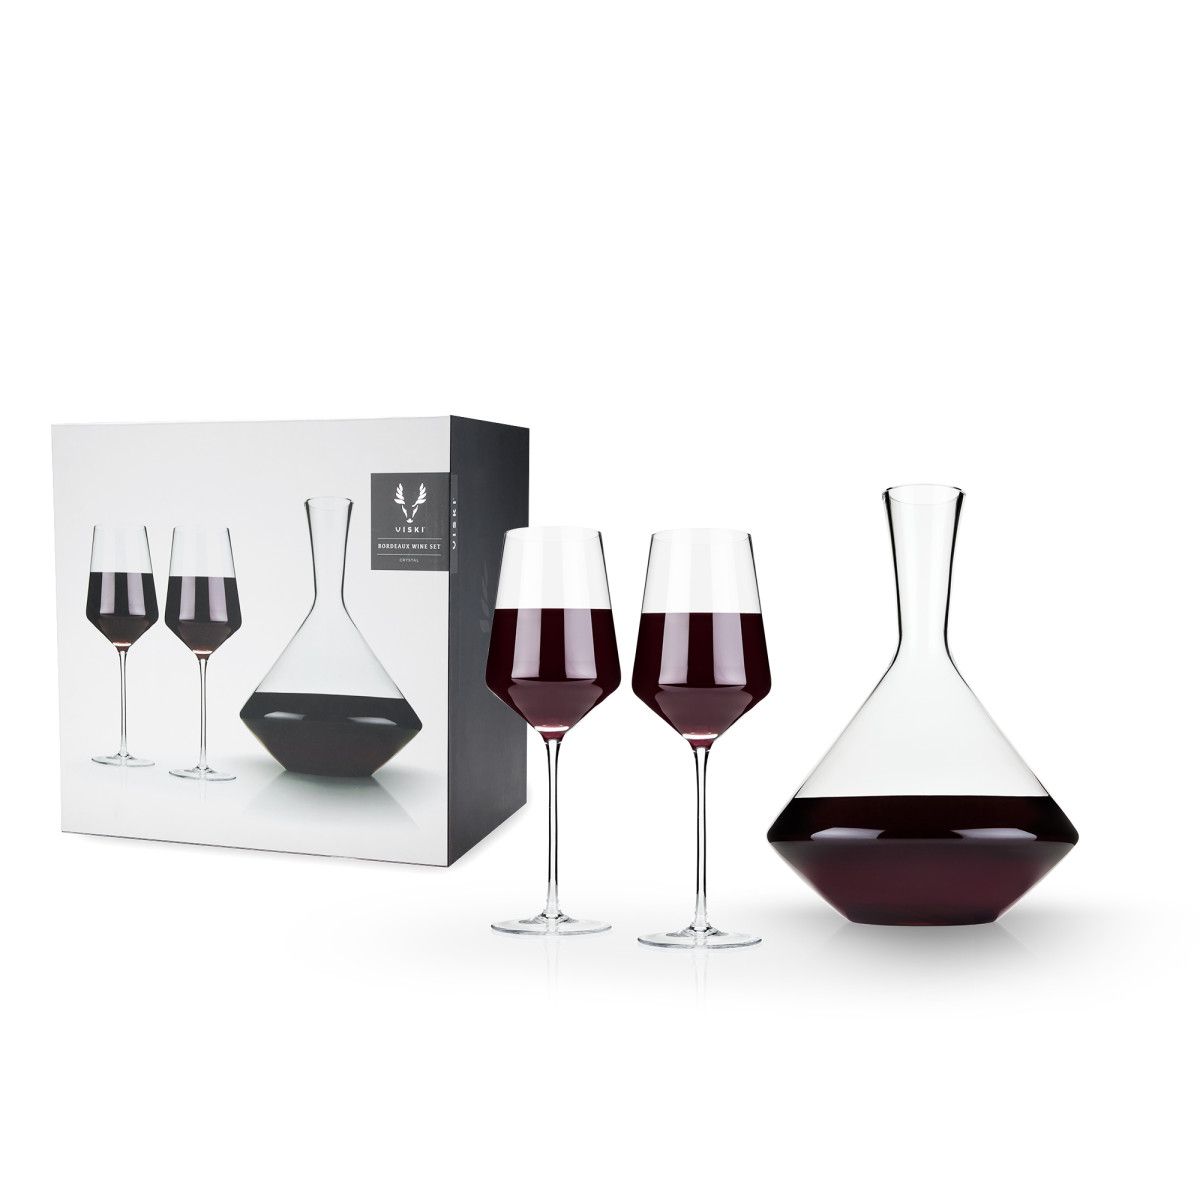 Angled Wine Glass